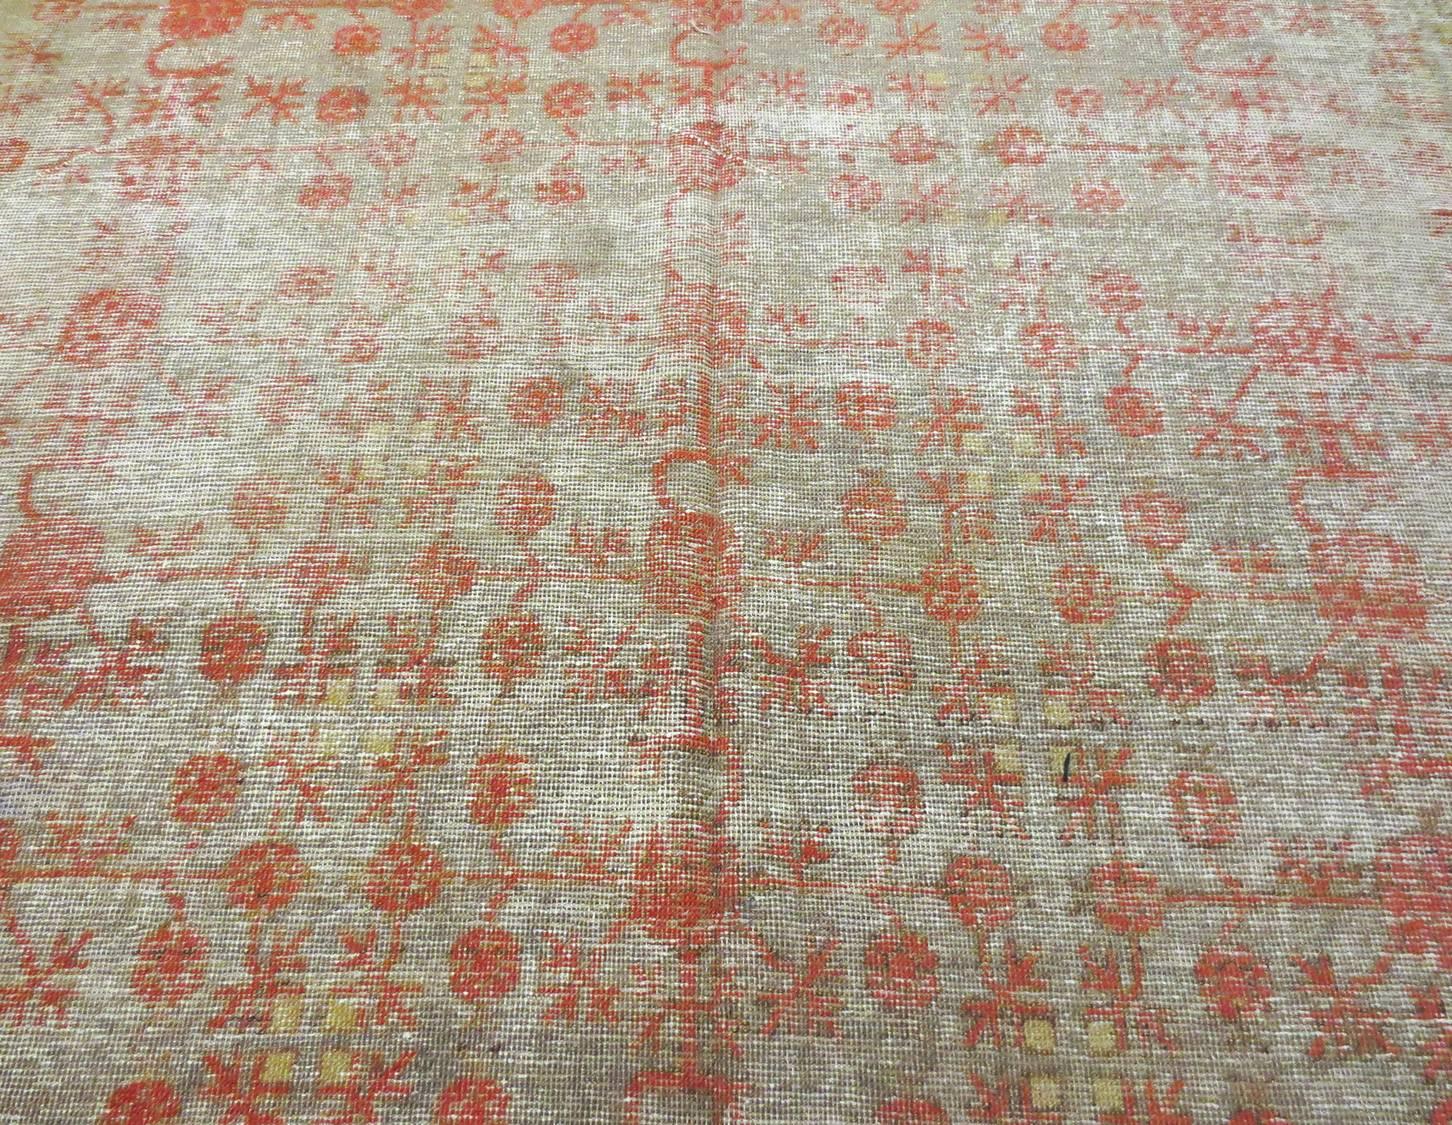 Dies ist ein antiker Khotan aus Ostturkestan, ca. 1880, der gleichmäßig abgenutzt ist. Der Teppich ist mit einem zarten roten Granatapfelmuster überzogen, das einen schönen Kontrast zu einem gedämpften, erdigen Hintergrund aus Gelb-, Elfenbein-,